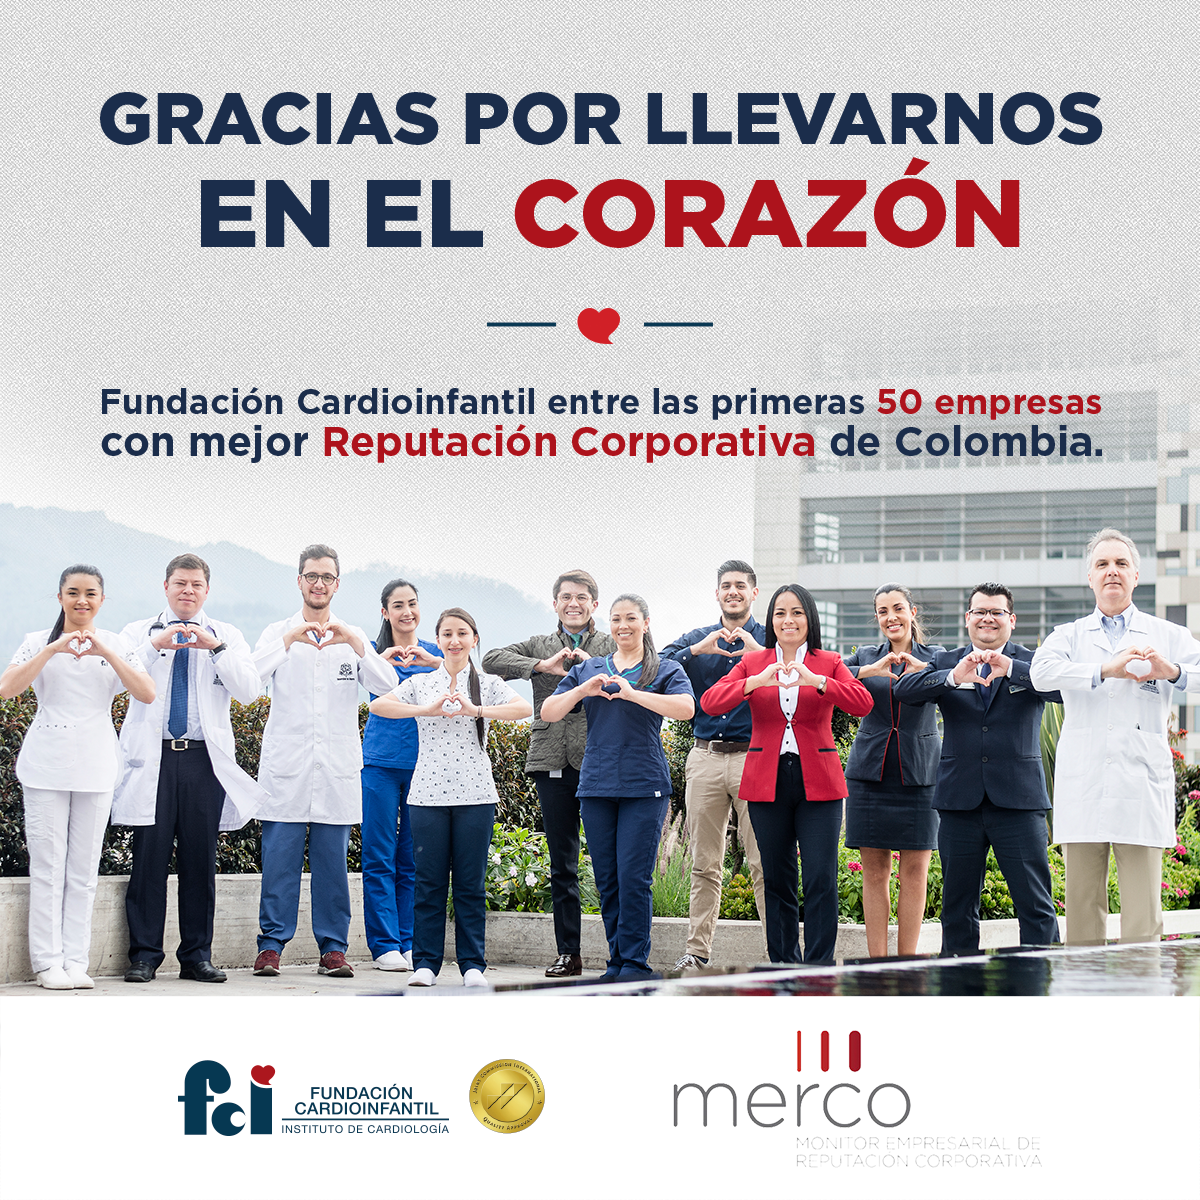 Somos la mejor empresa de salud en reputación corporativa de Colombia